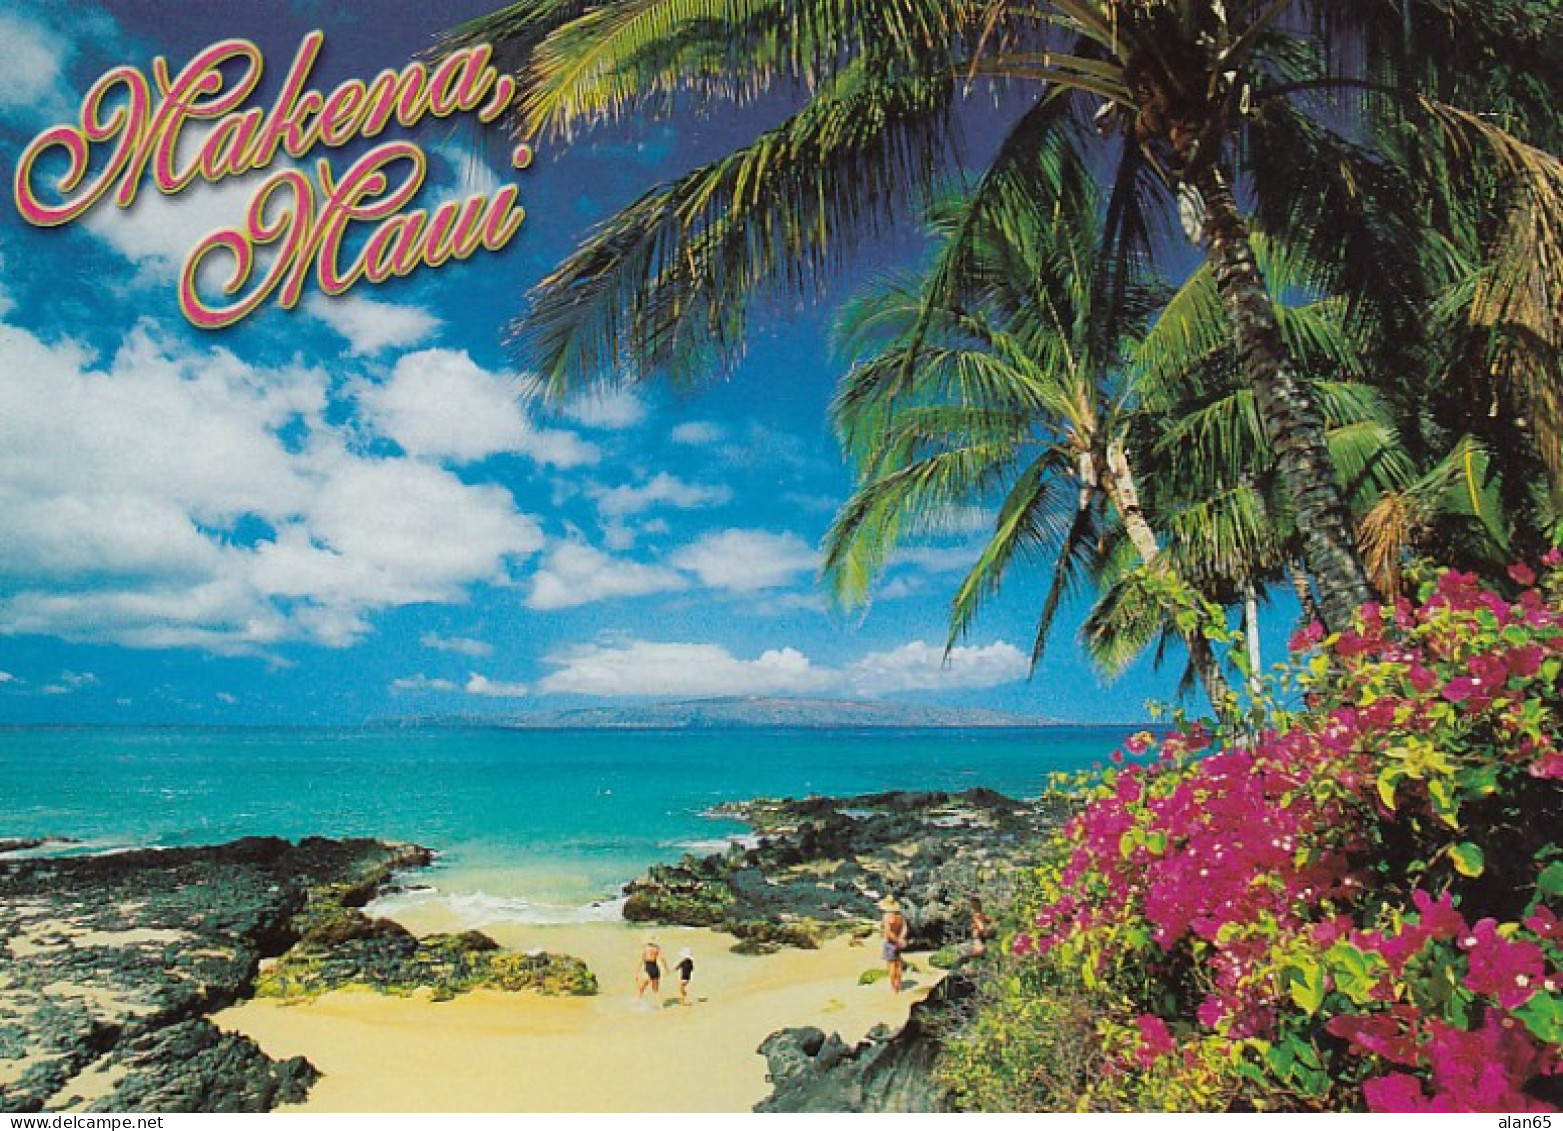 Wakena, Maui Hawaii, South Shore Beach Scene C2000s Vintage Postcard - Maui